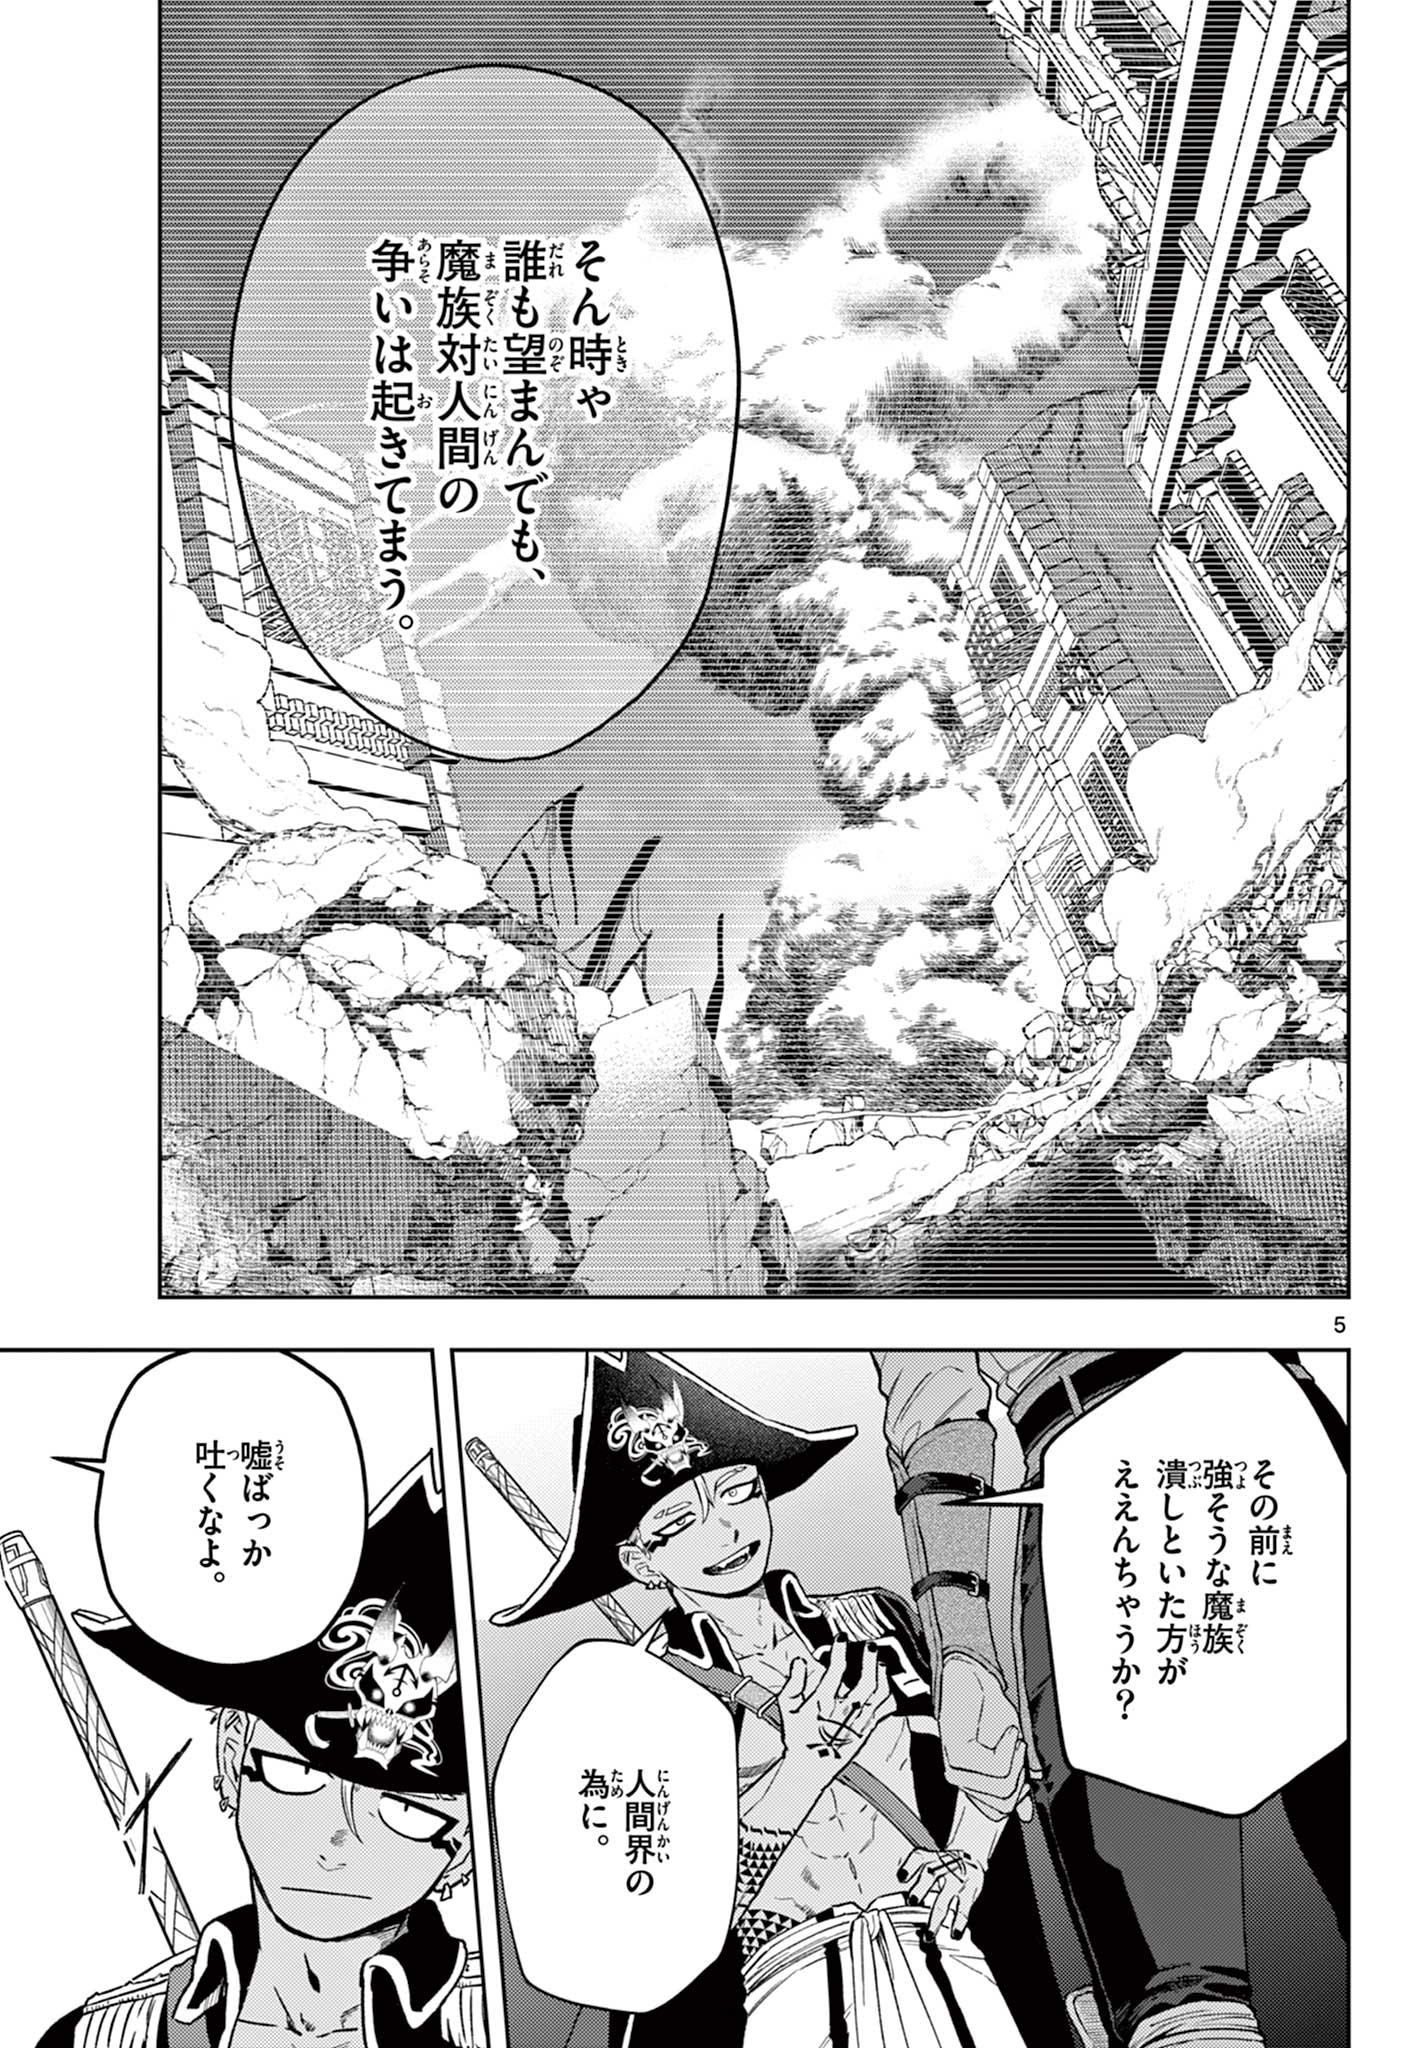 Mataku no Vermut - Chapter 24 - Page 5